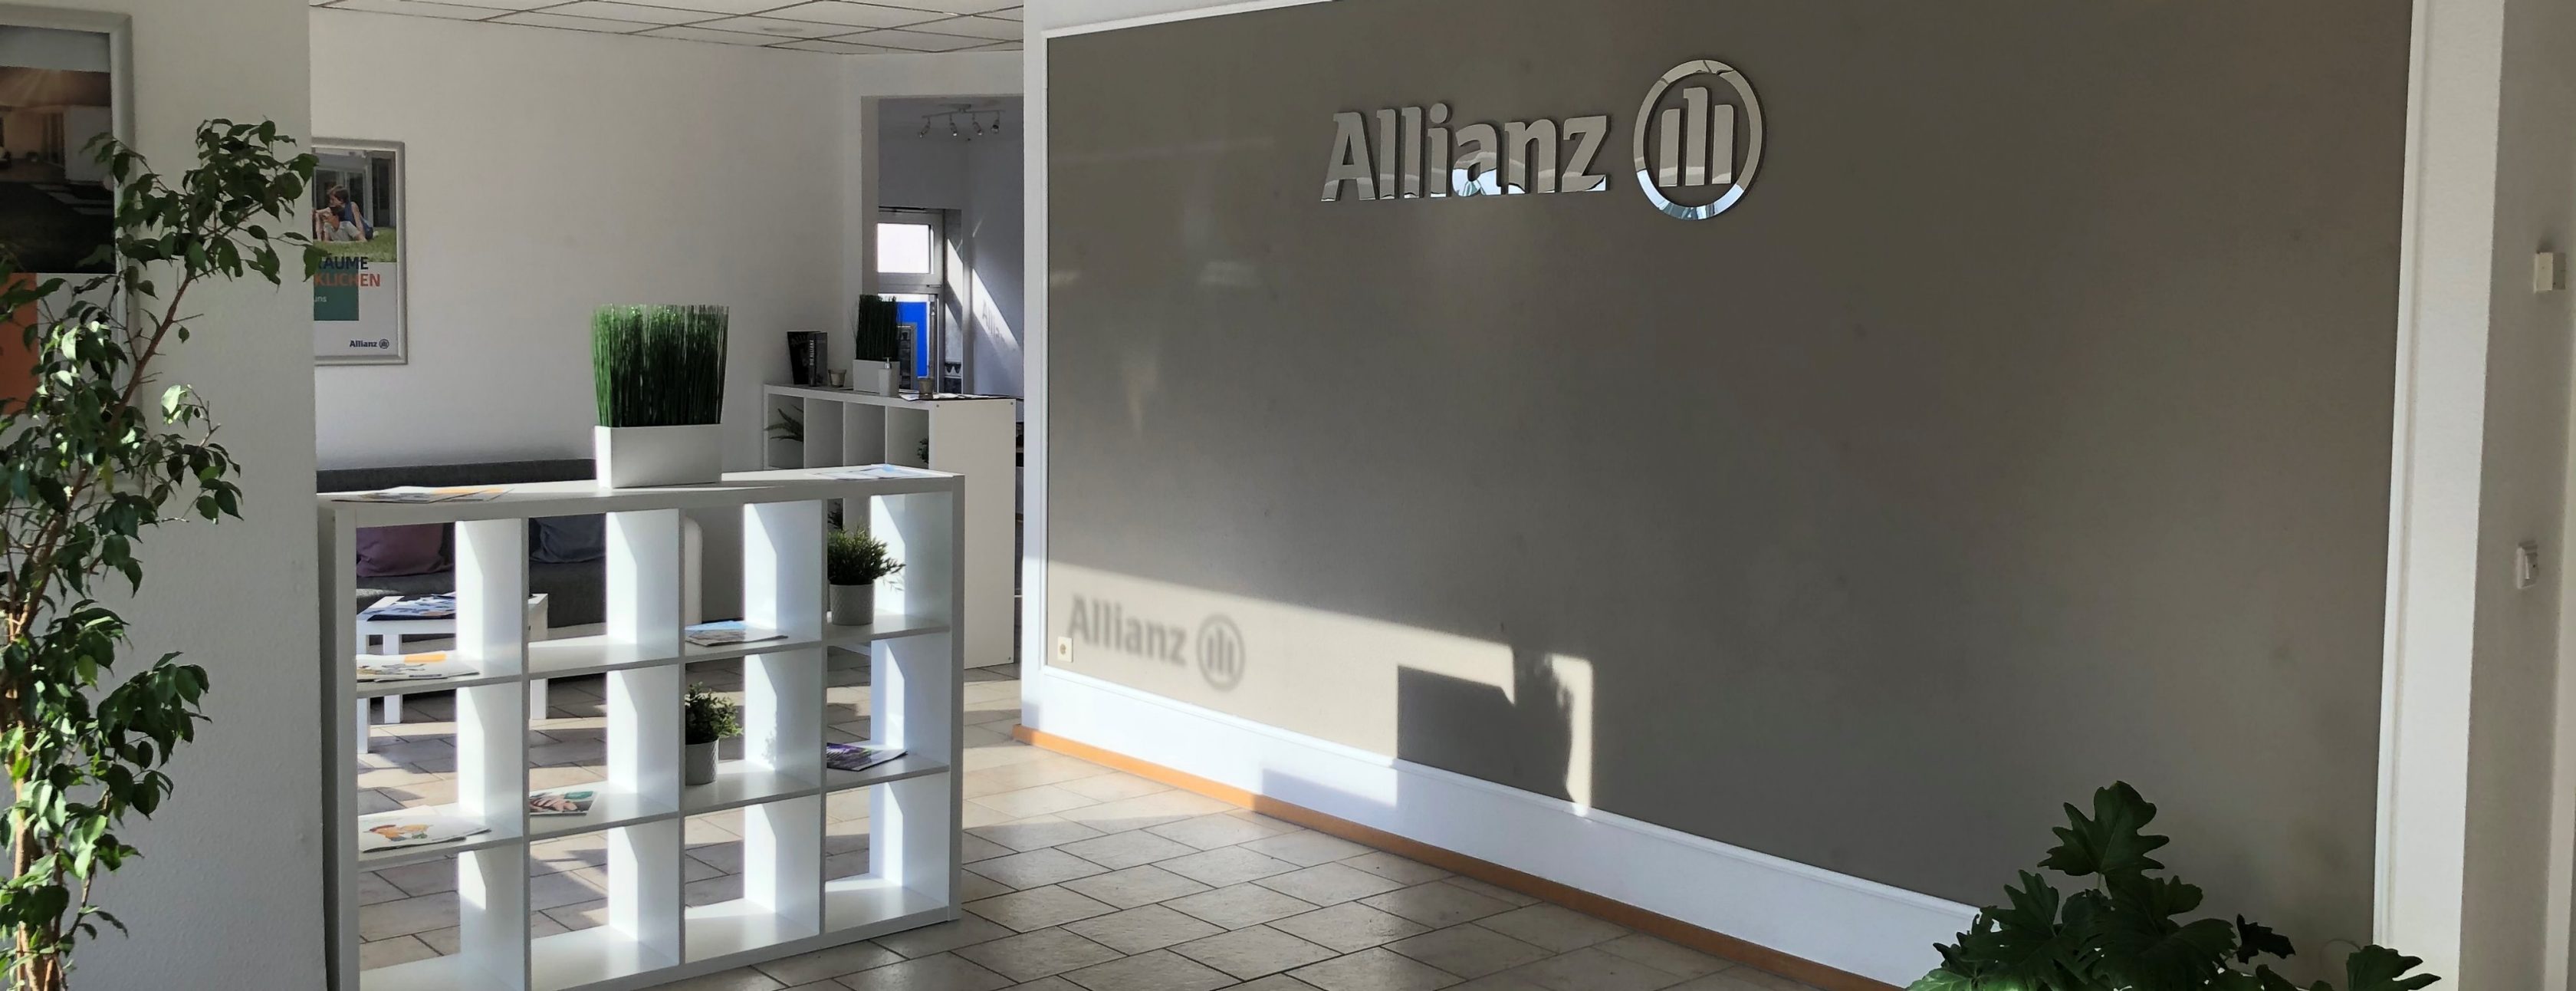 Allianz Versicherung Jens Wiesner Muldestausee - Agentur